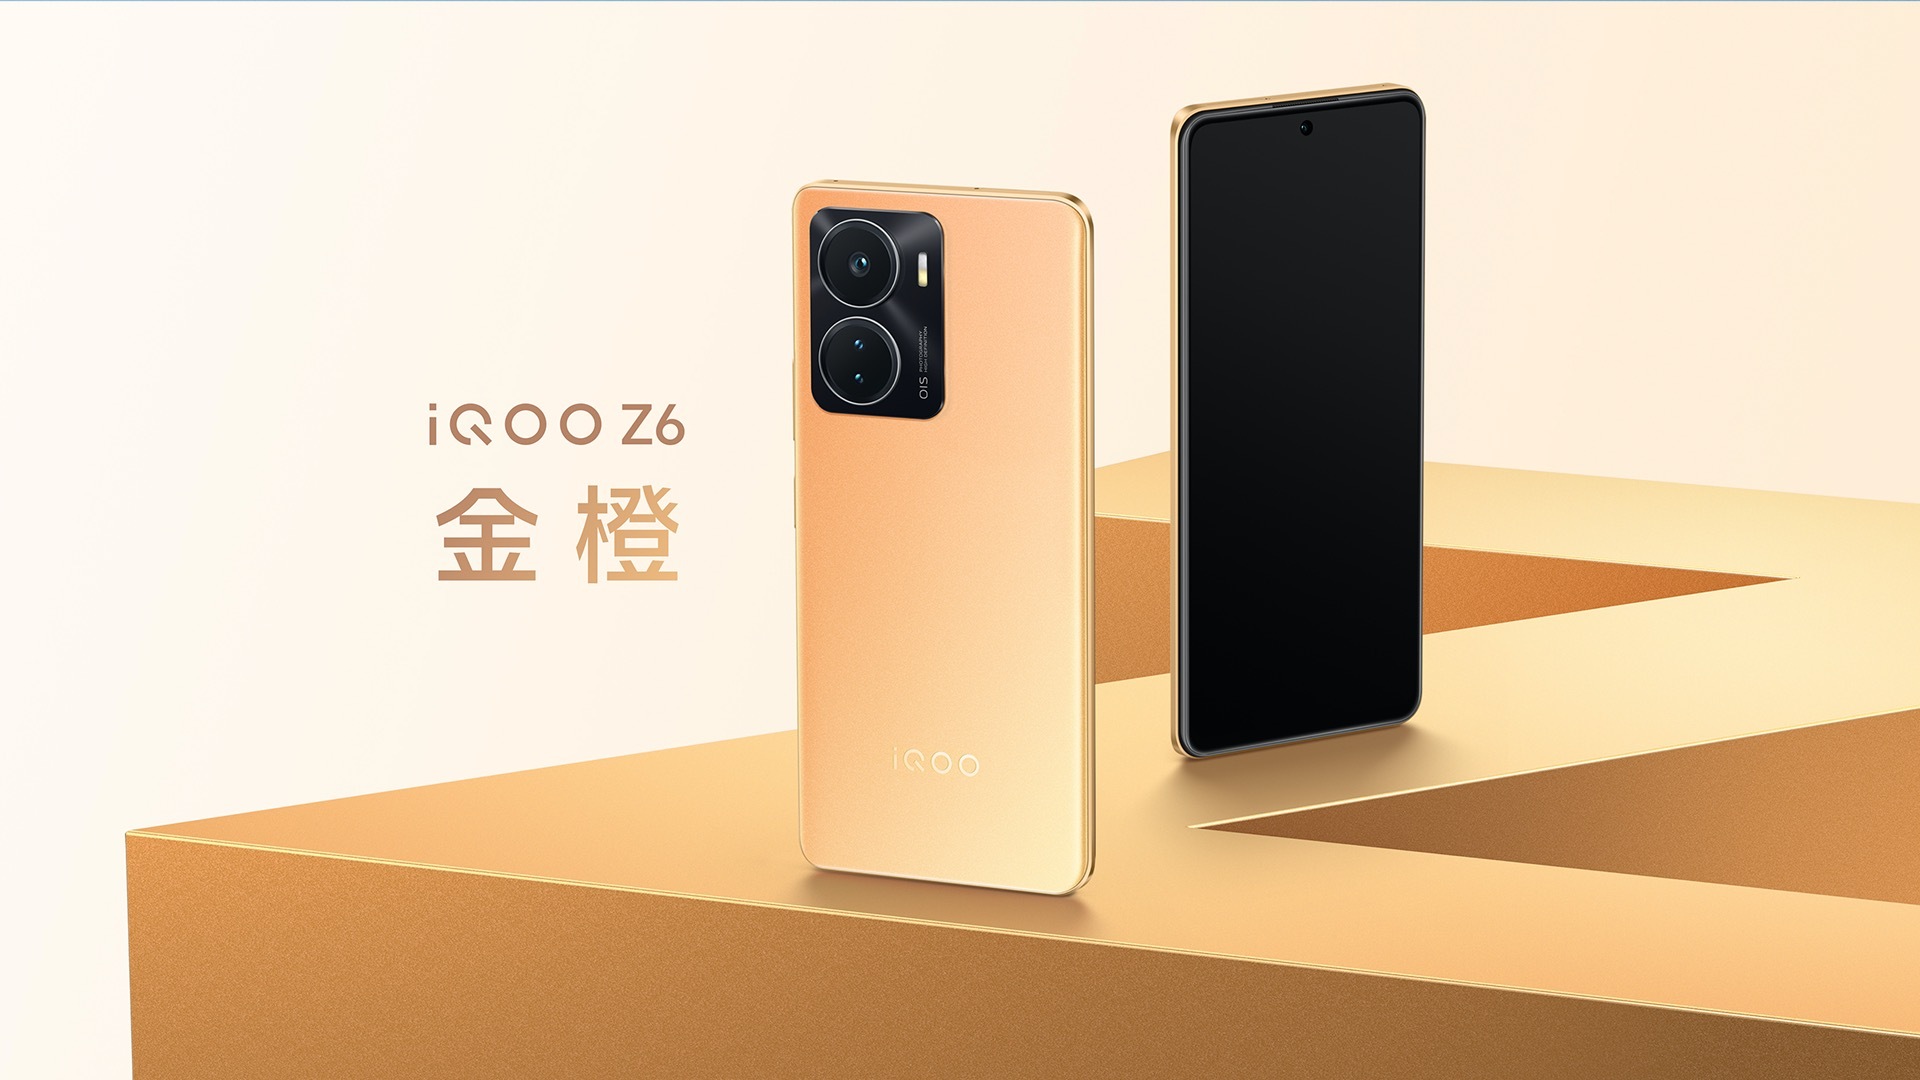 L'iQOO Z6 est devenu le smartphone à bas prix le plus puissant du monde selon AnTuTu - dans le top 3 figurent Honor et Xiaomi